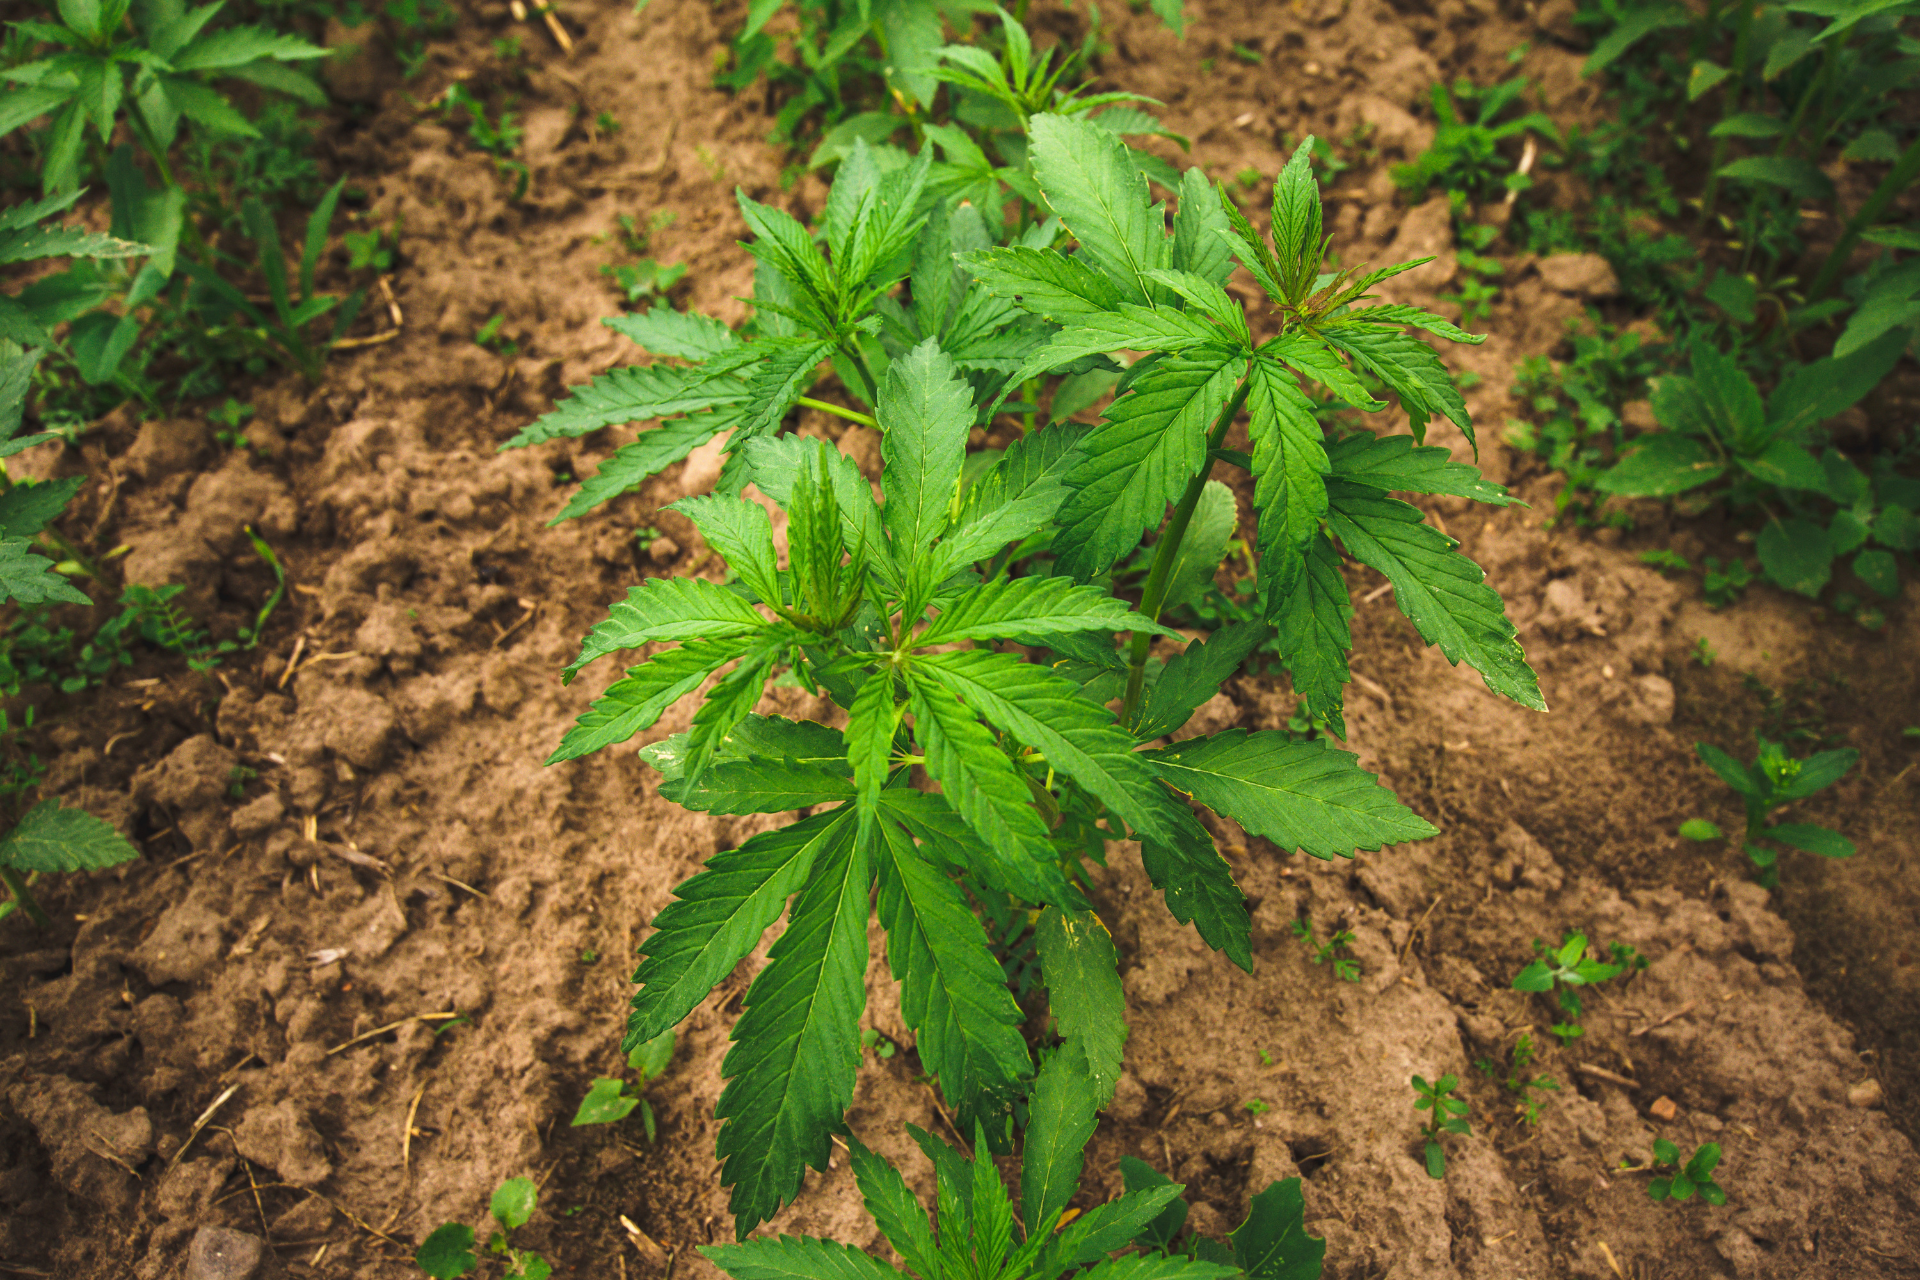 Anbaumedien für Cannabispflanzen im Vergleich: Eine Übersicht